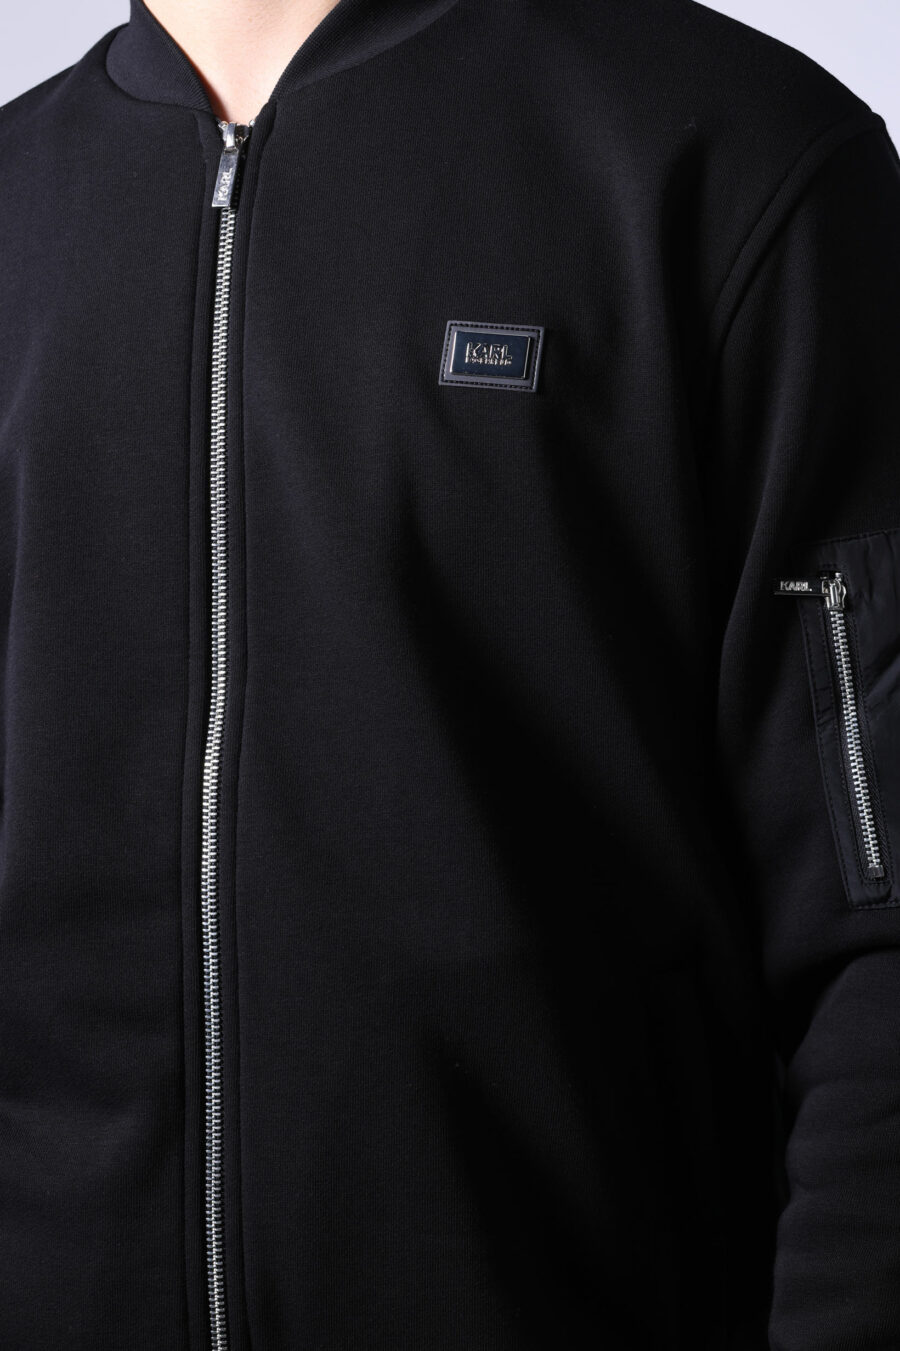 Schwarze Jacke mit Mini-Logo auf Abzeichen und Ärmeltaschen - Untitled Catalog 05733